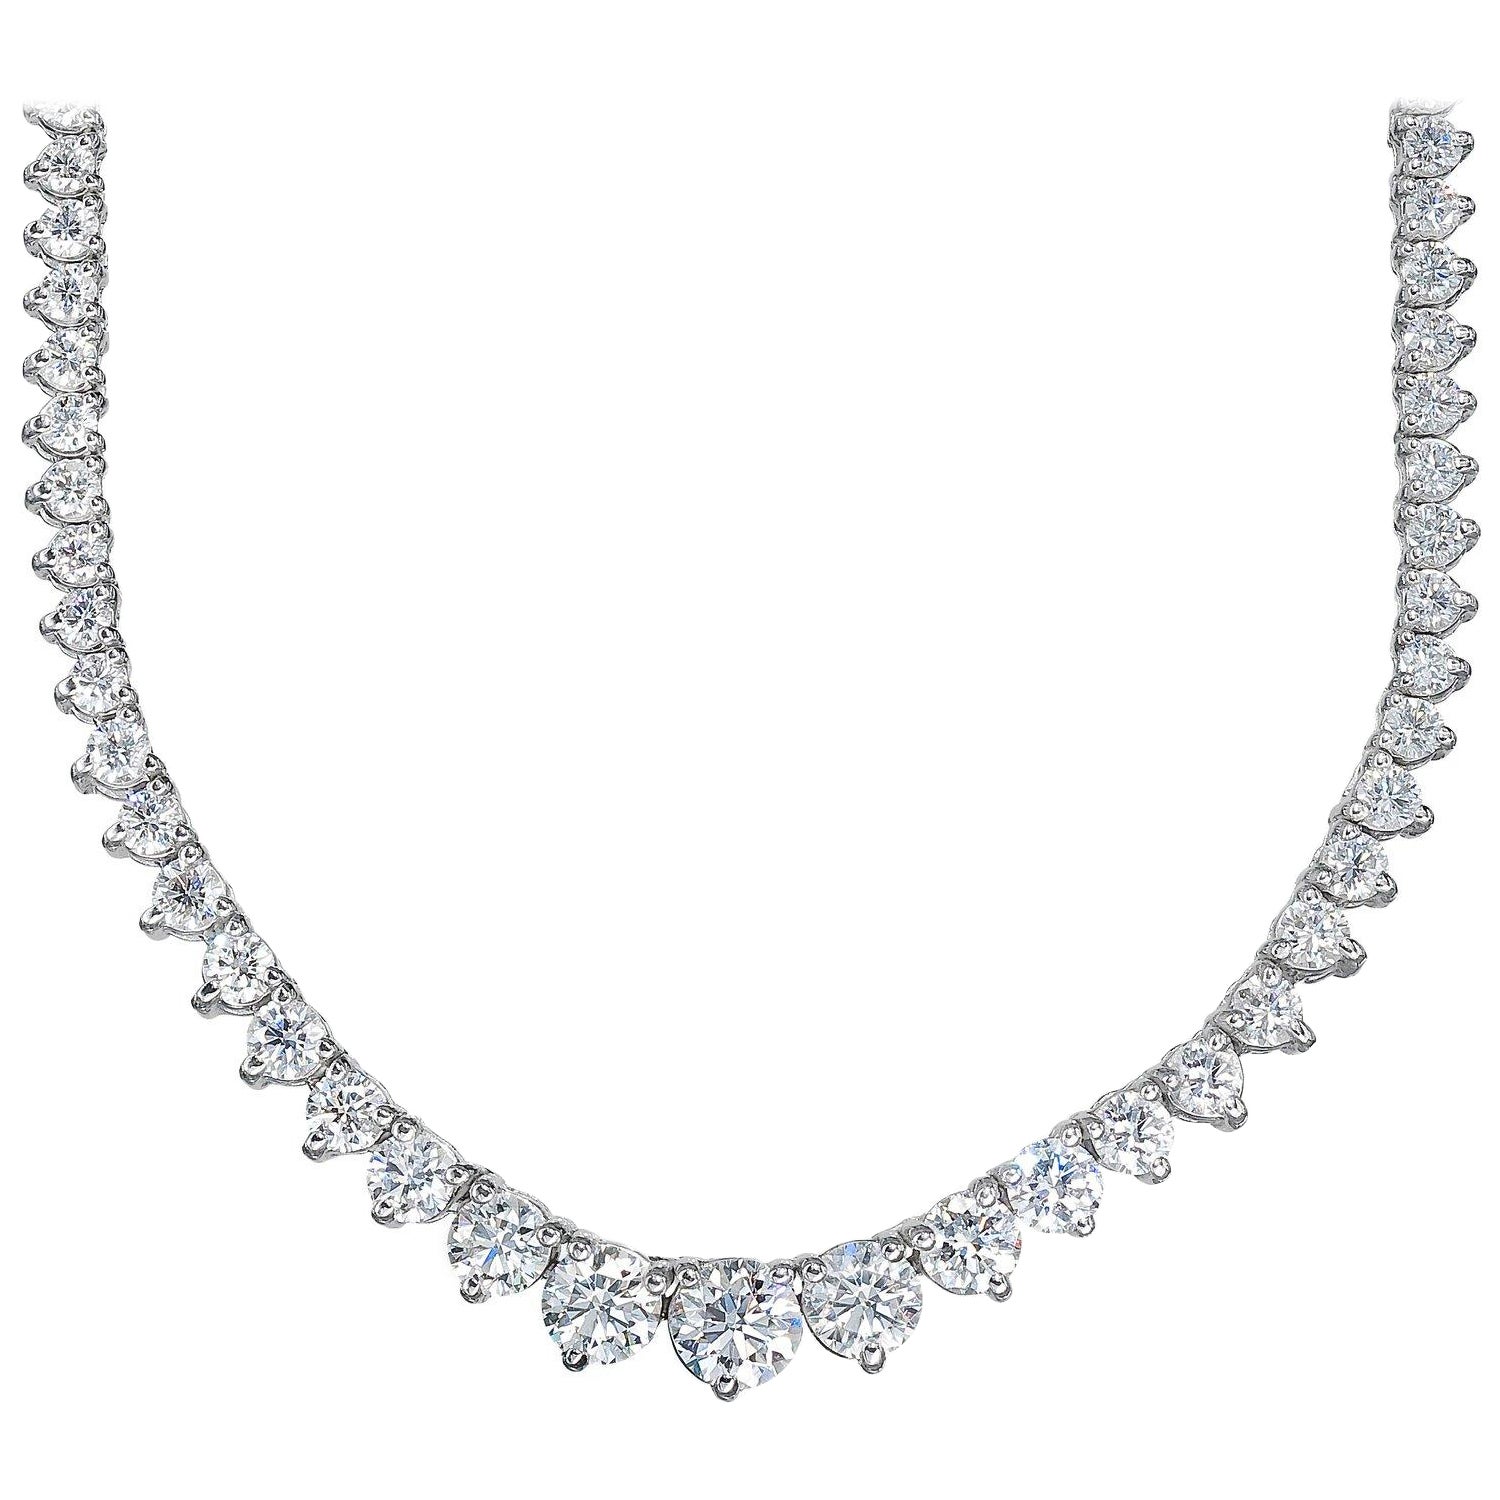 Abgestufte Riviera-Tennis-Halskette (25 Karat EF VVS GIA Diamanten) aus Weißgold